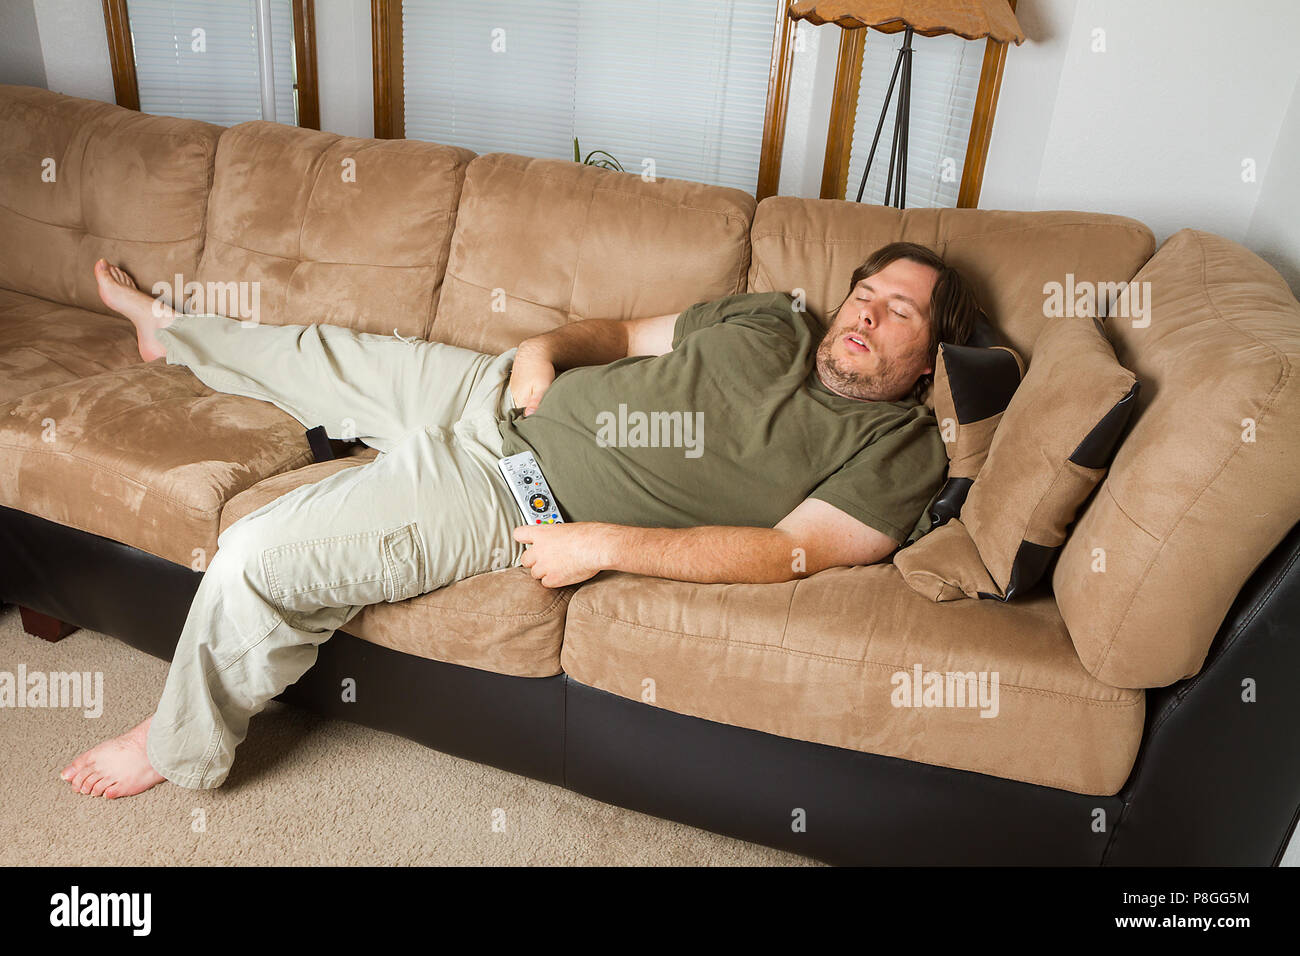 Gros homme dormir sur la table avec sa main dans son pantalon Photo Stock -  Alamy